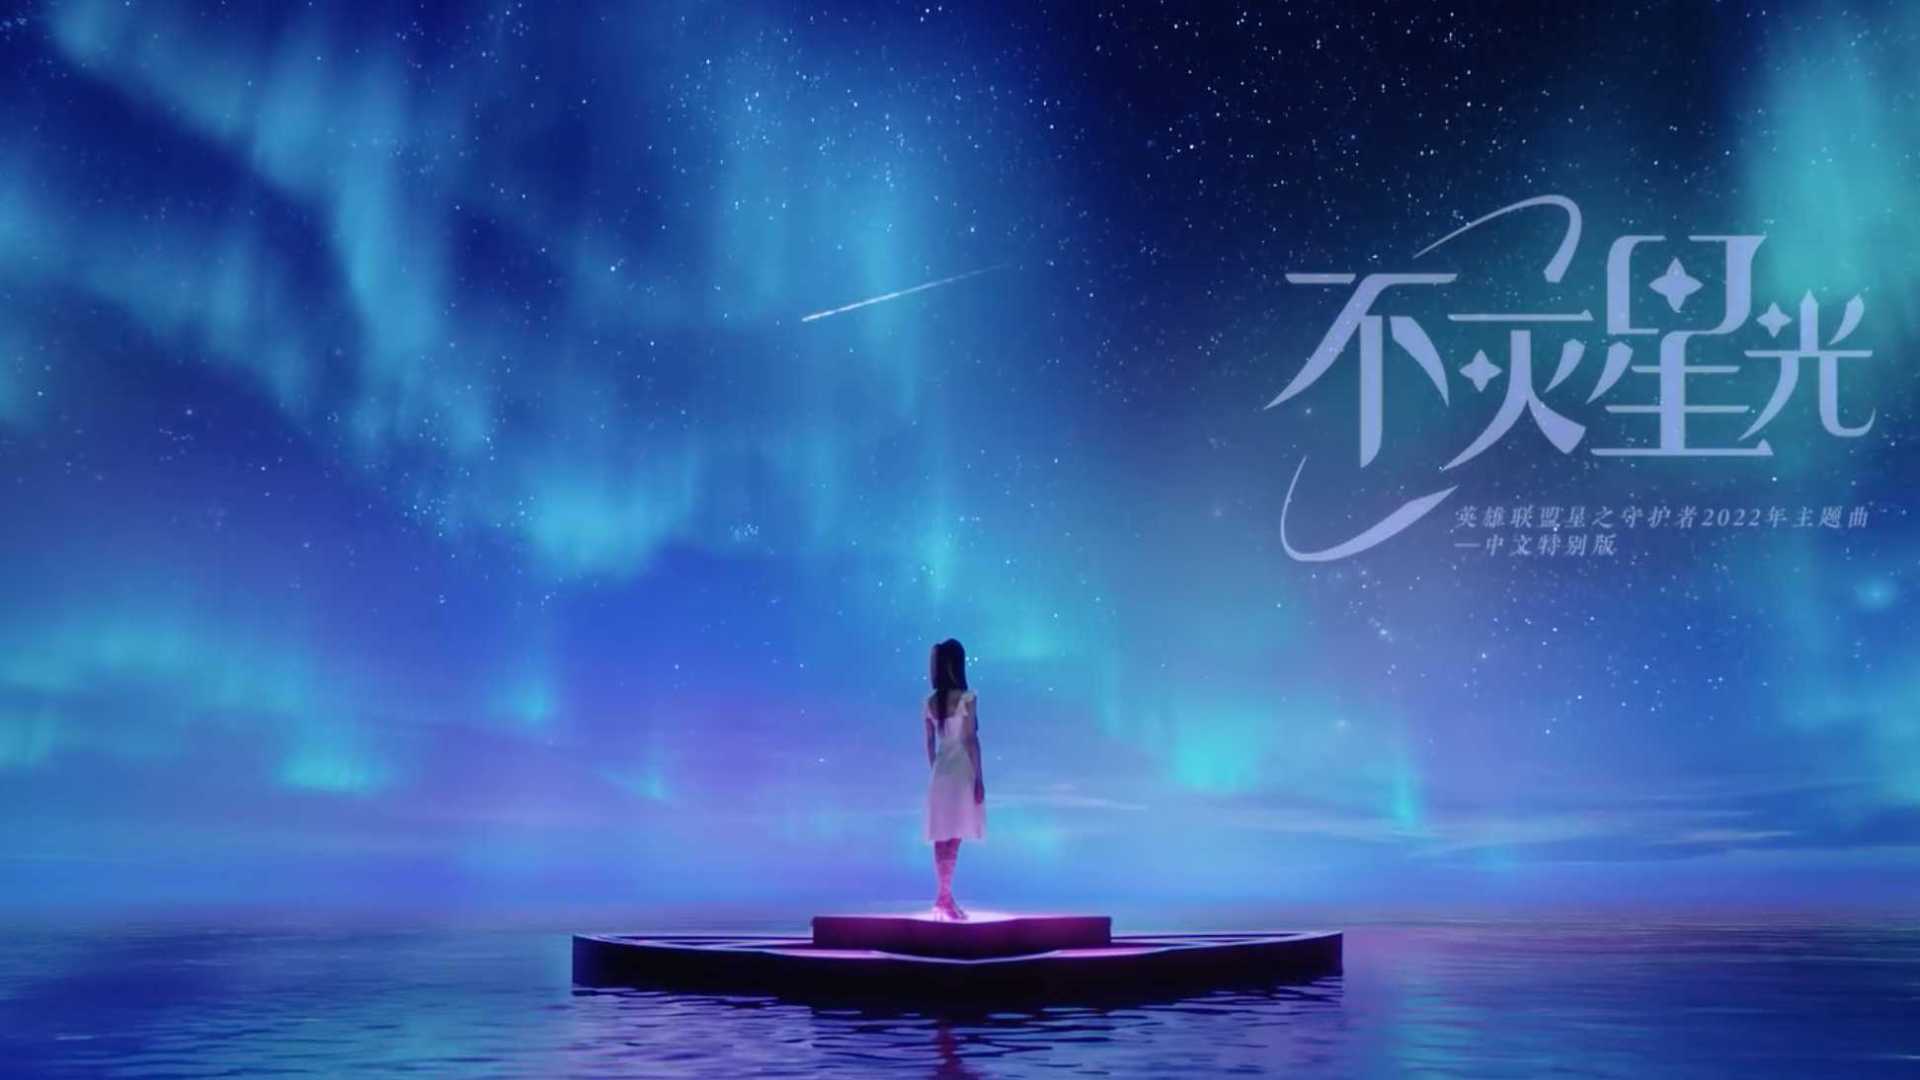 薛凯琪星守主题曲中文特别版《不灭星光》发布